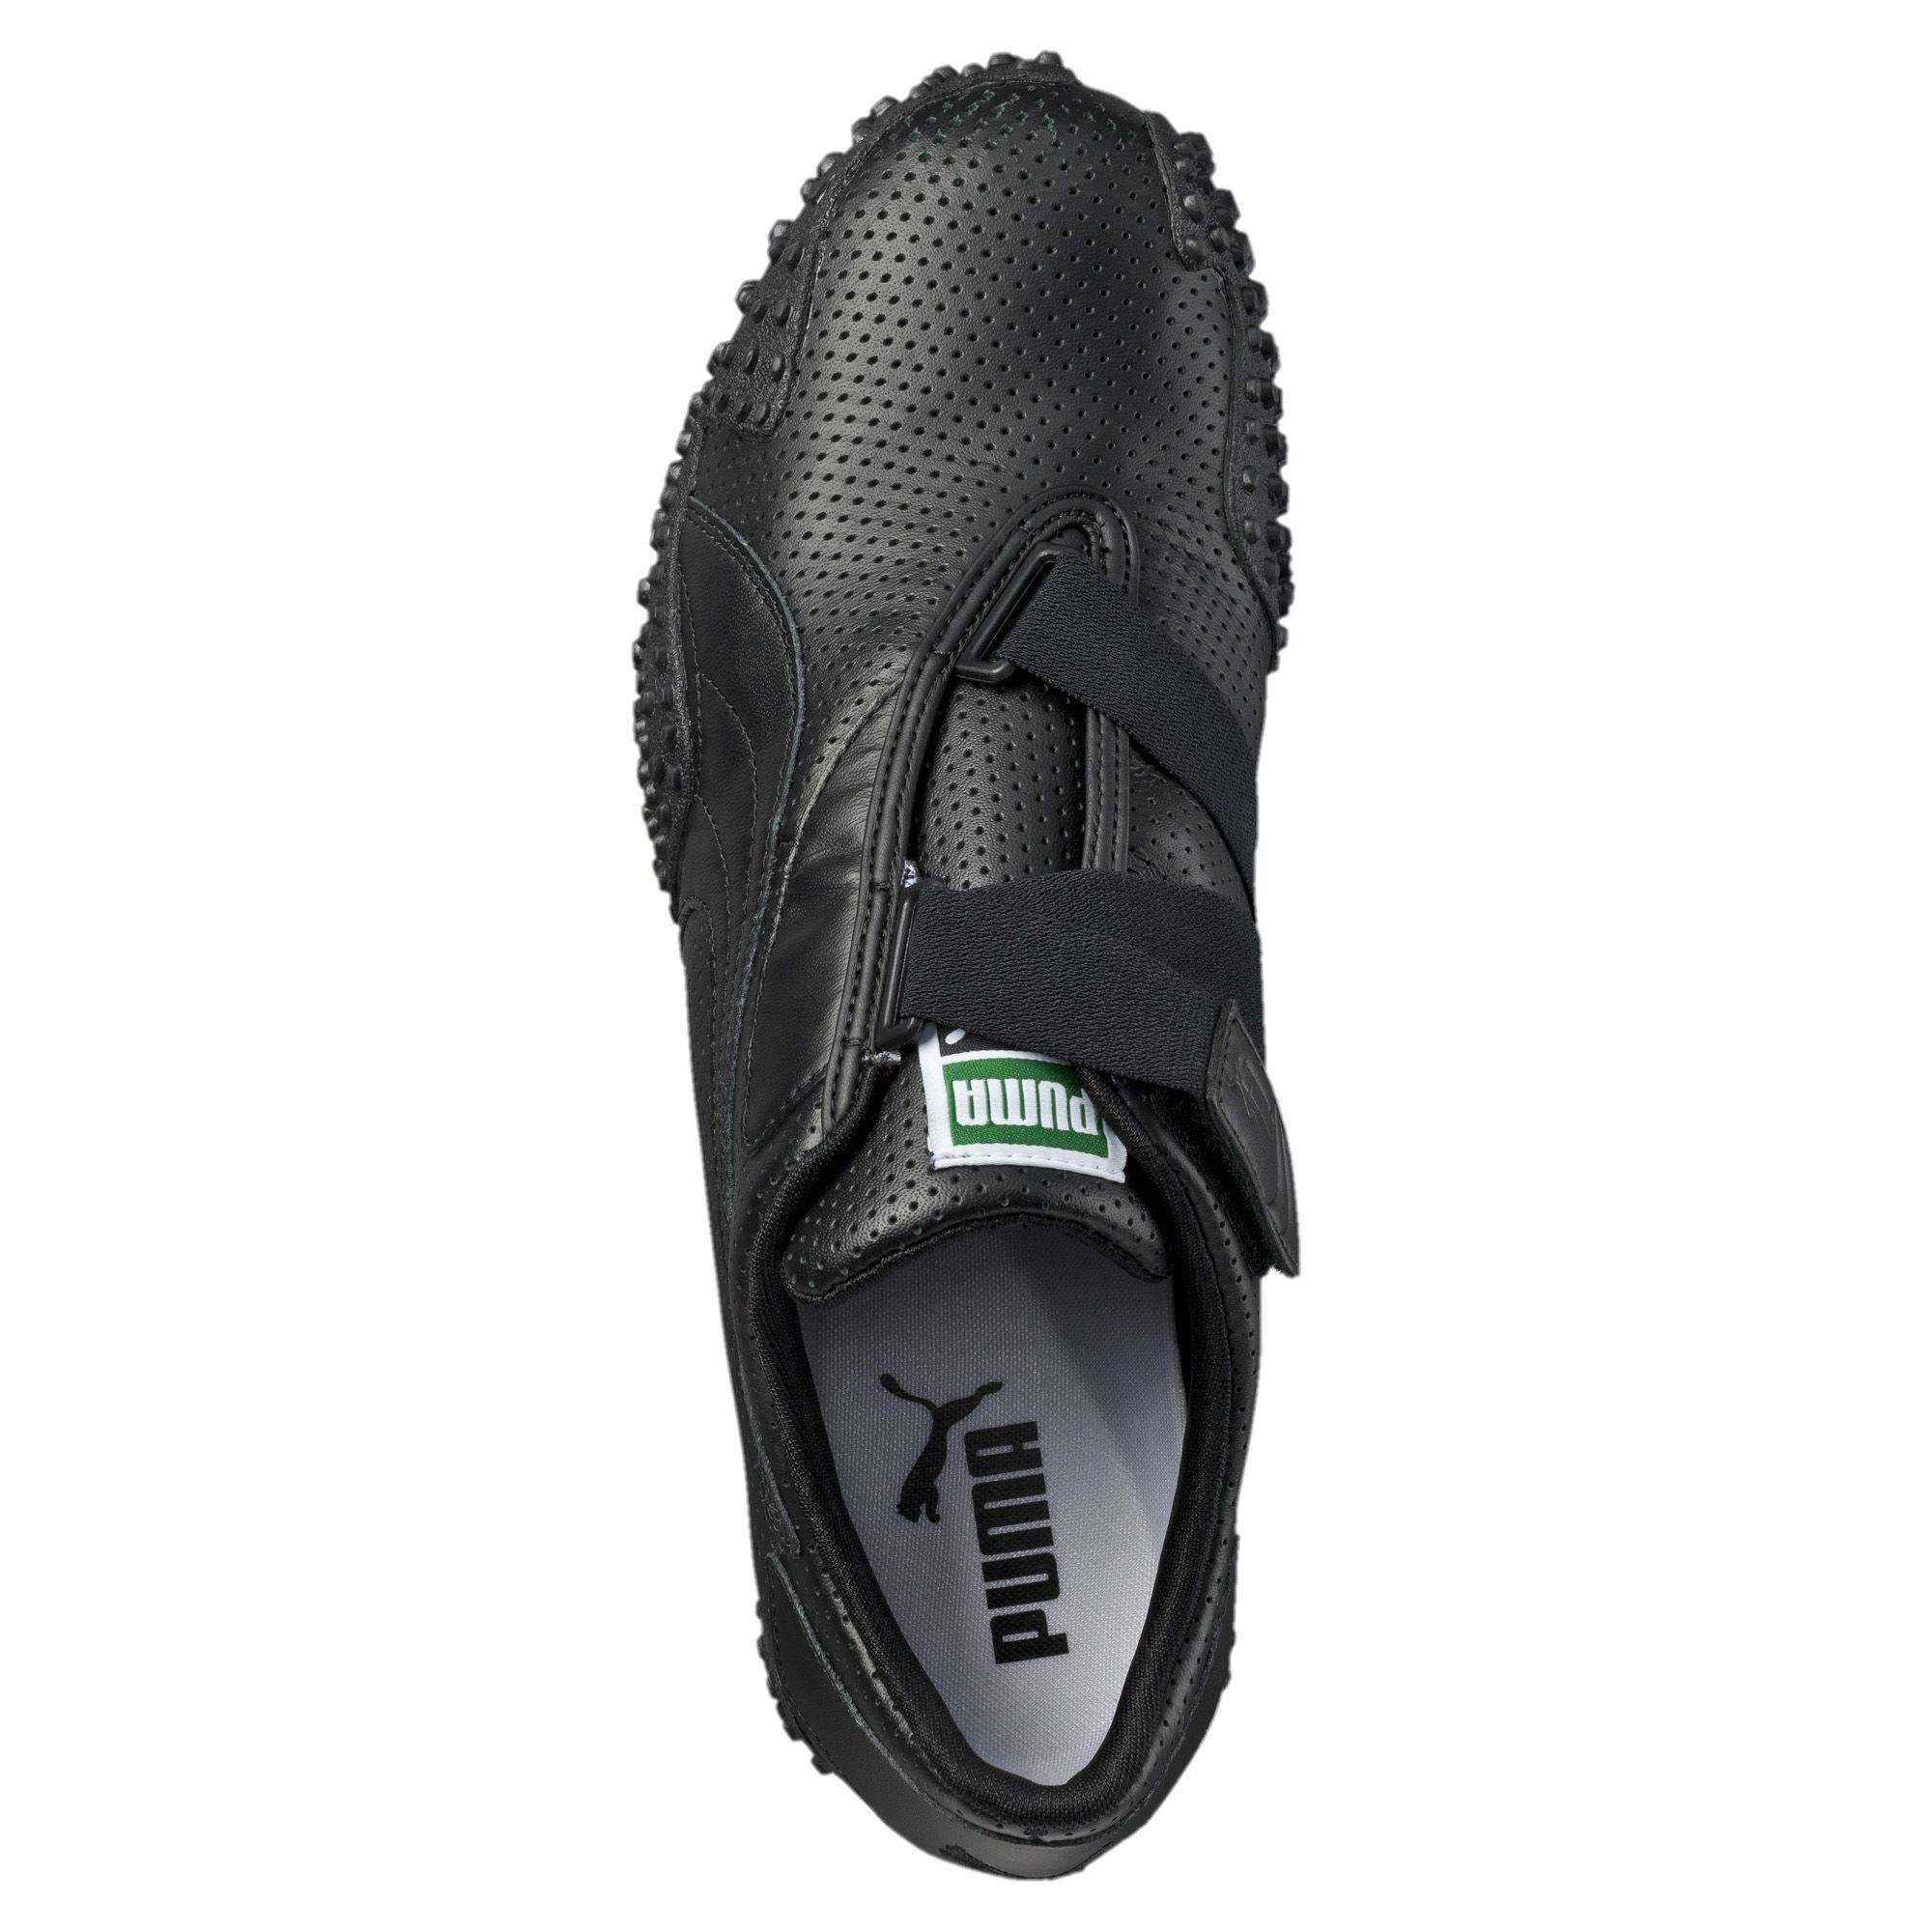 puma mostro perf leather men's shoes,OFF 72%www.jtecrc.com